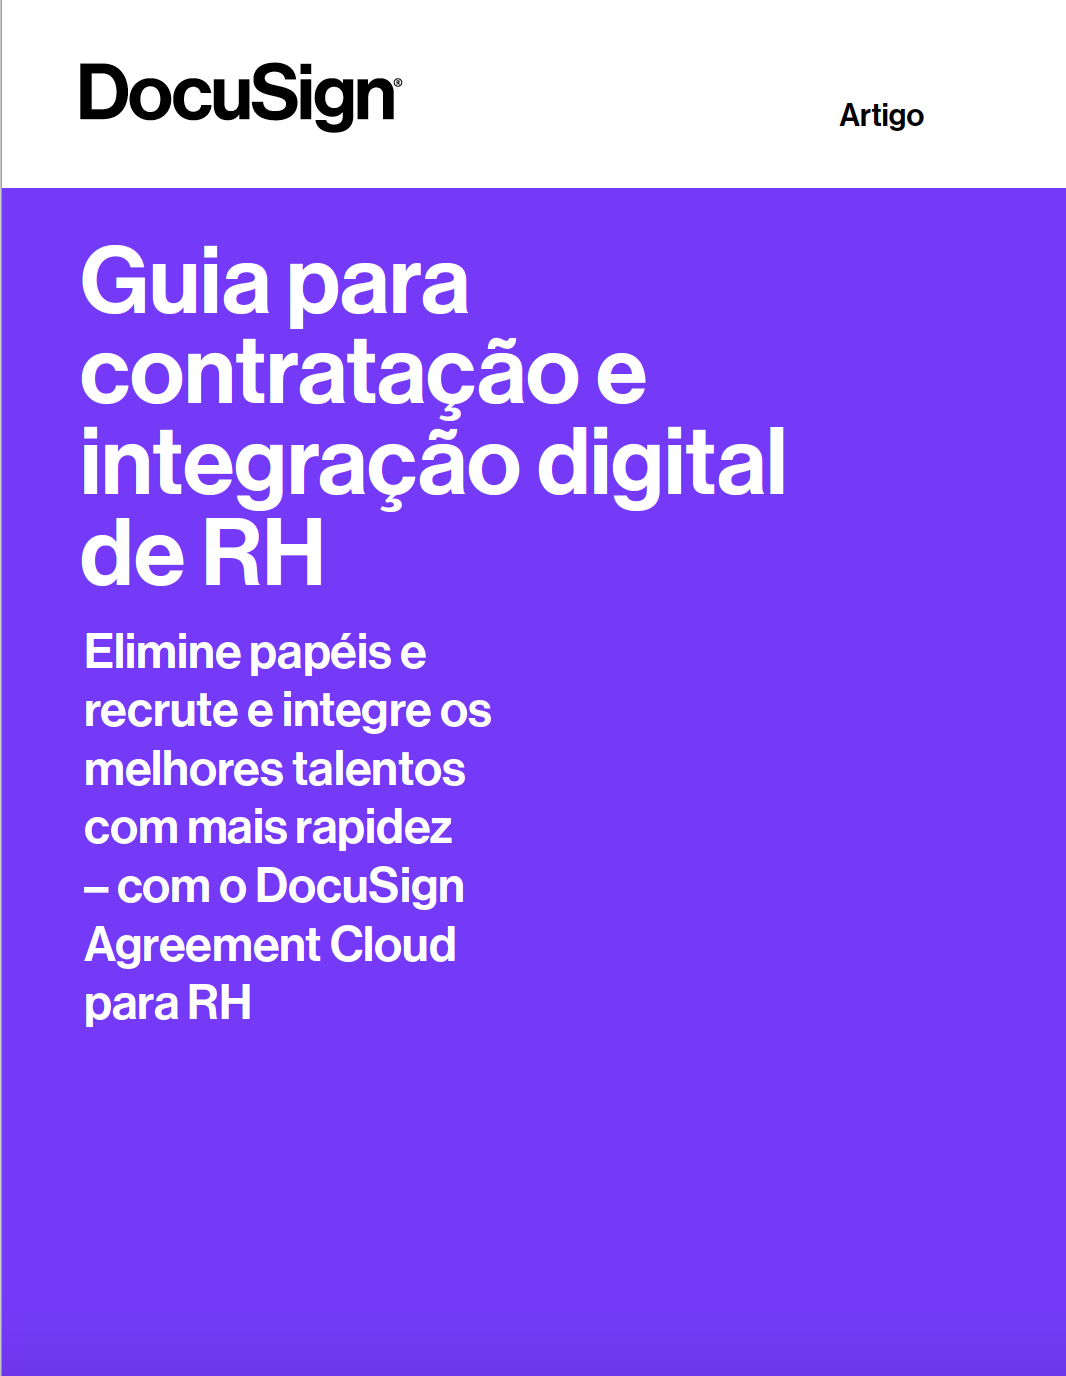 Imagem da capa do eBook "Guia para a contratação e integração digital de RH"